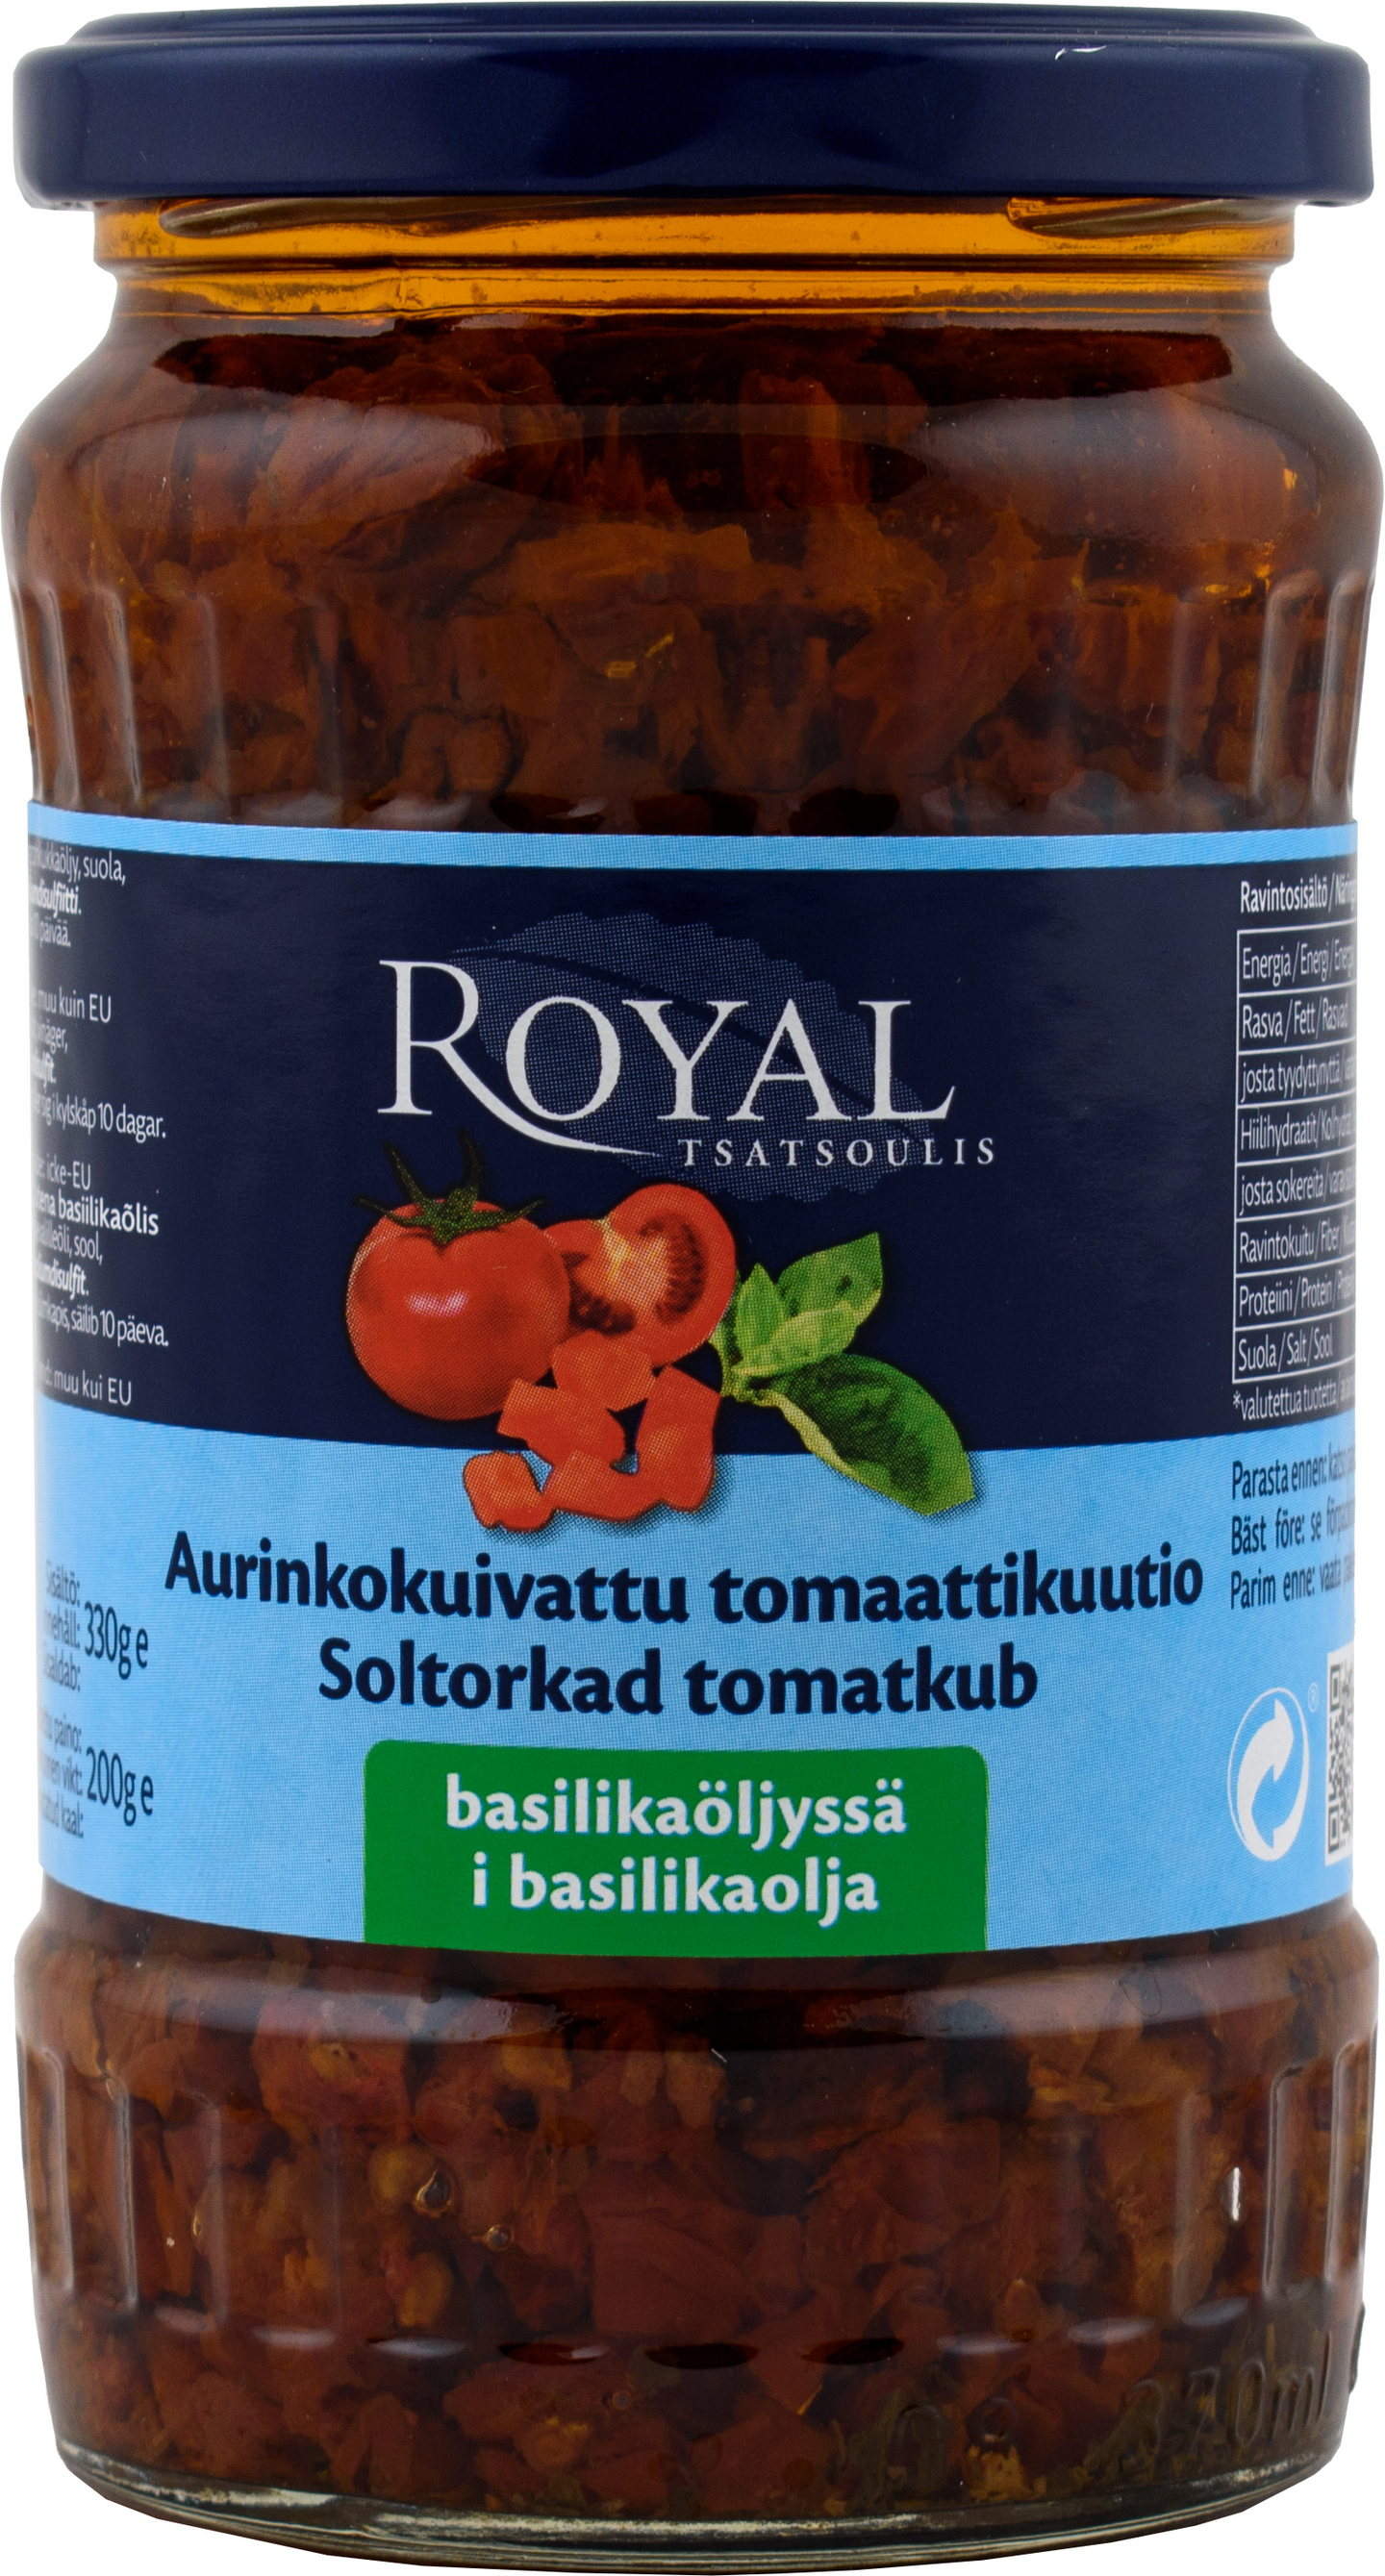 Royal aurinkokuivattu tomaattikuutio basilikaöljyssä 330g/200g